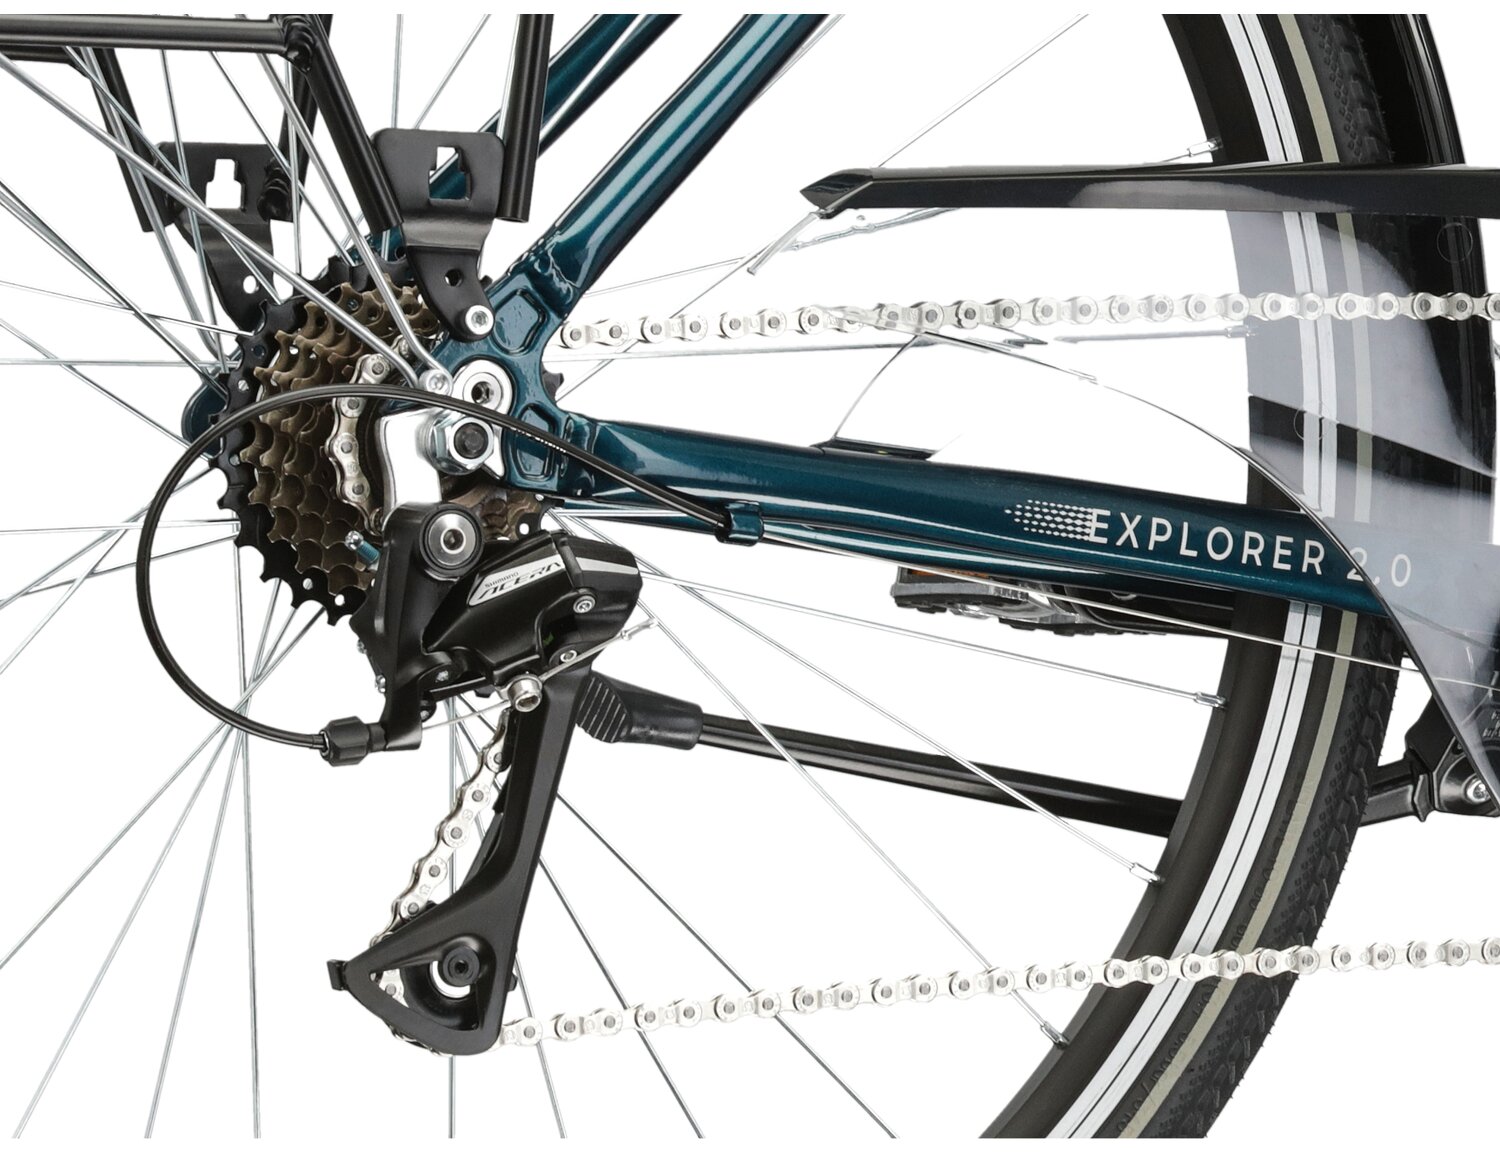  Tylna siedmiobiegowa przerzutka Shimano Acera M3020 oraz hamulce v-brake w rowerze trekkingowym damskim KROSS Explorer 2.0 